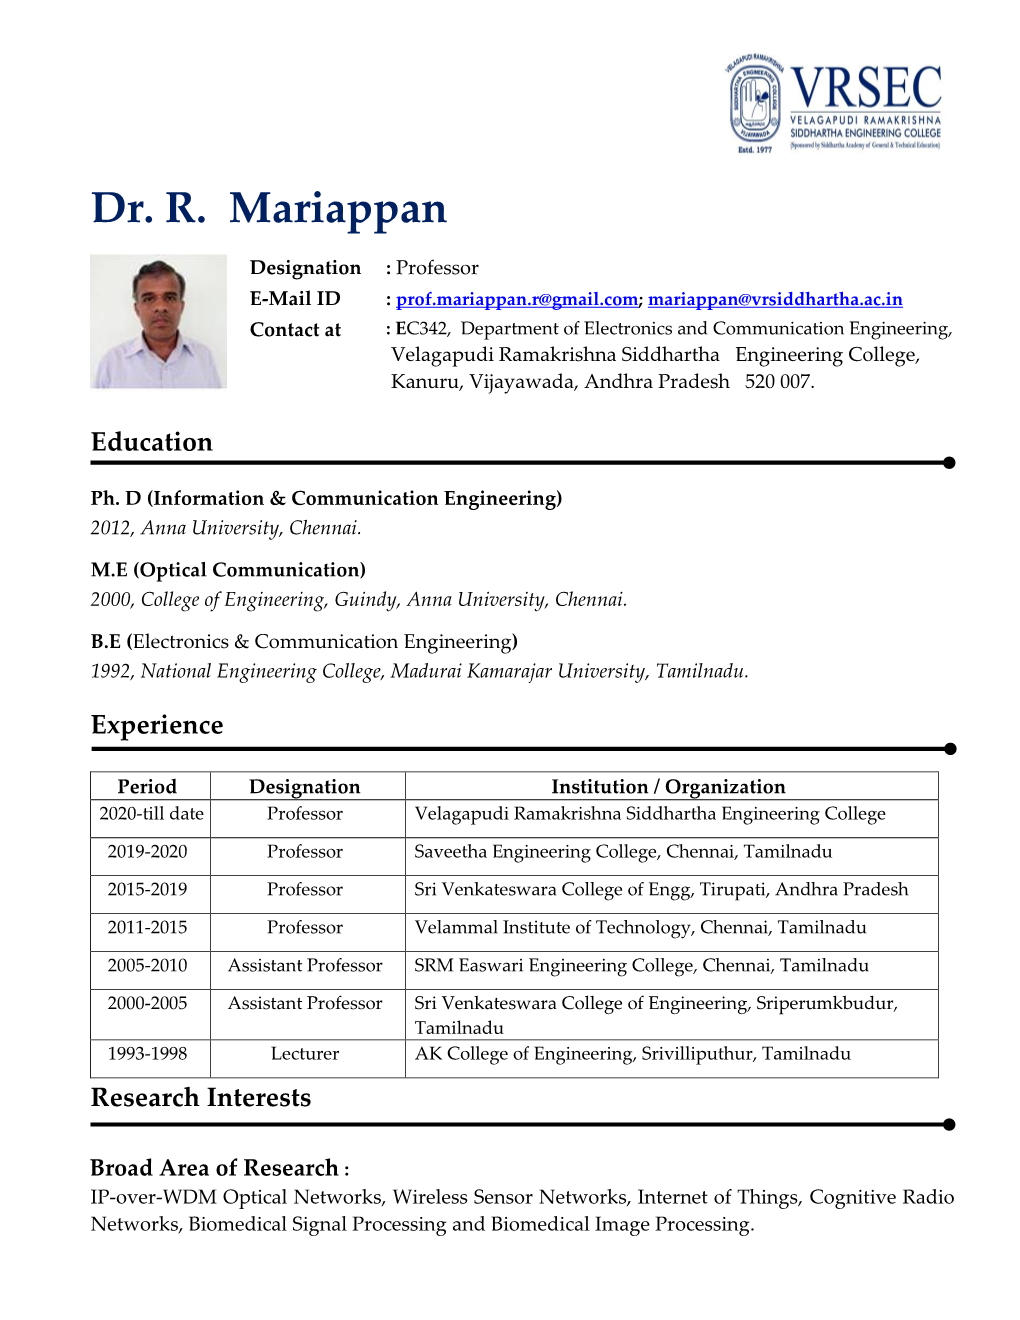 Dr. R. Mariappan